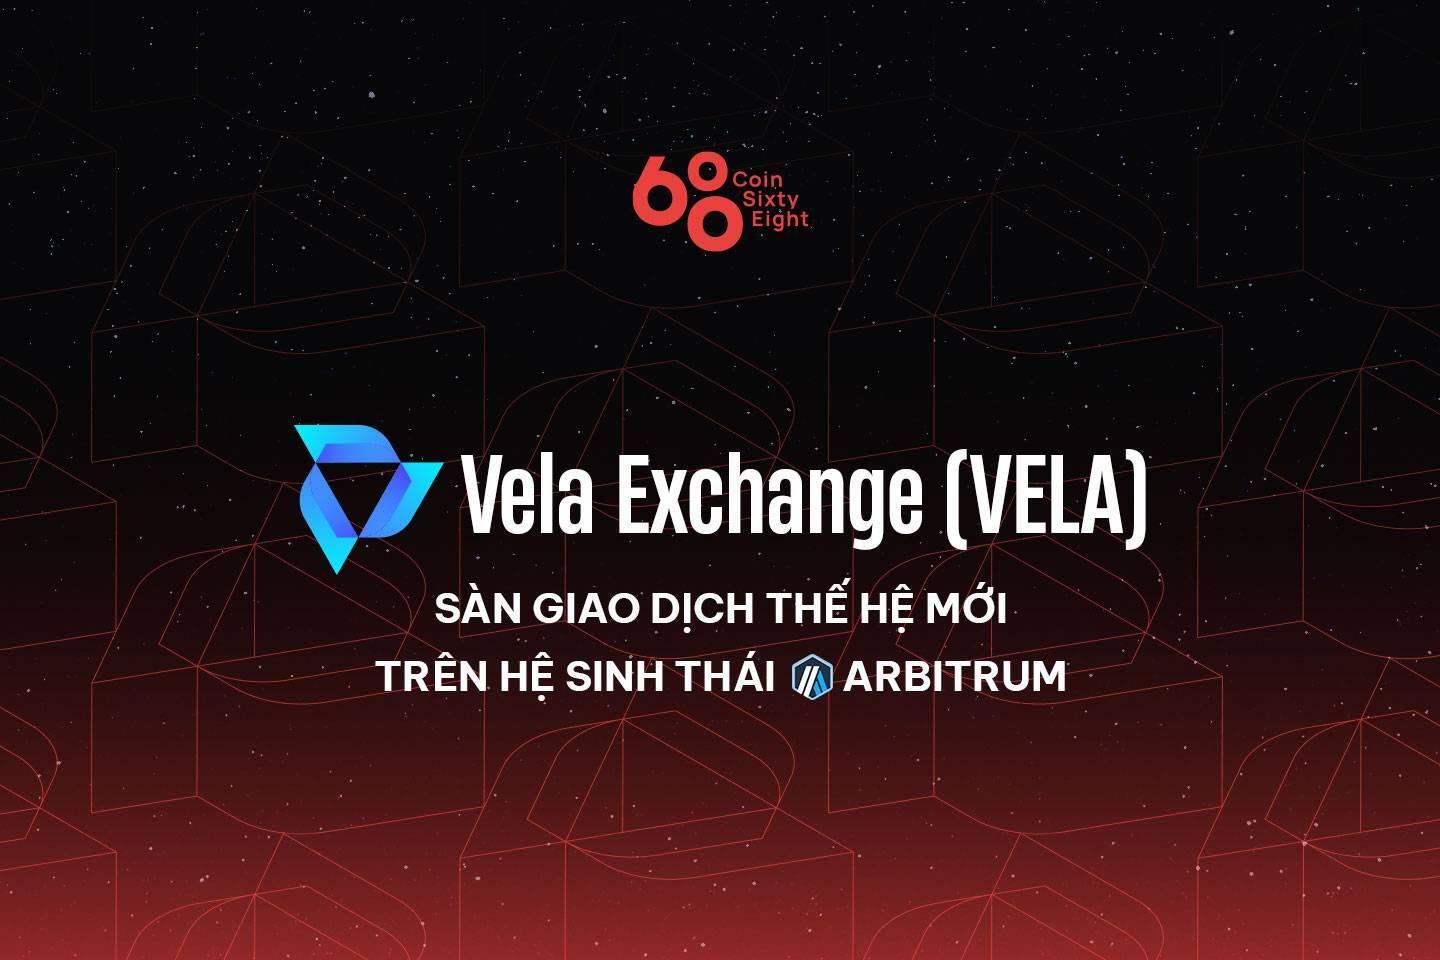 vela-exchange-vela-san-giao-dich-the-he-moi-tren-he-sinh-thai-arbitrum